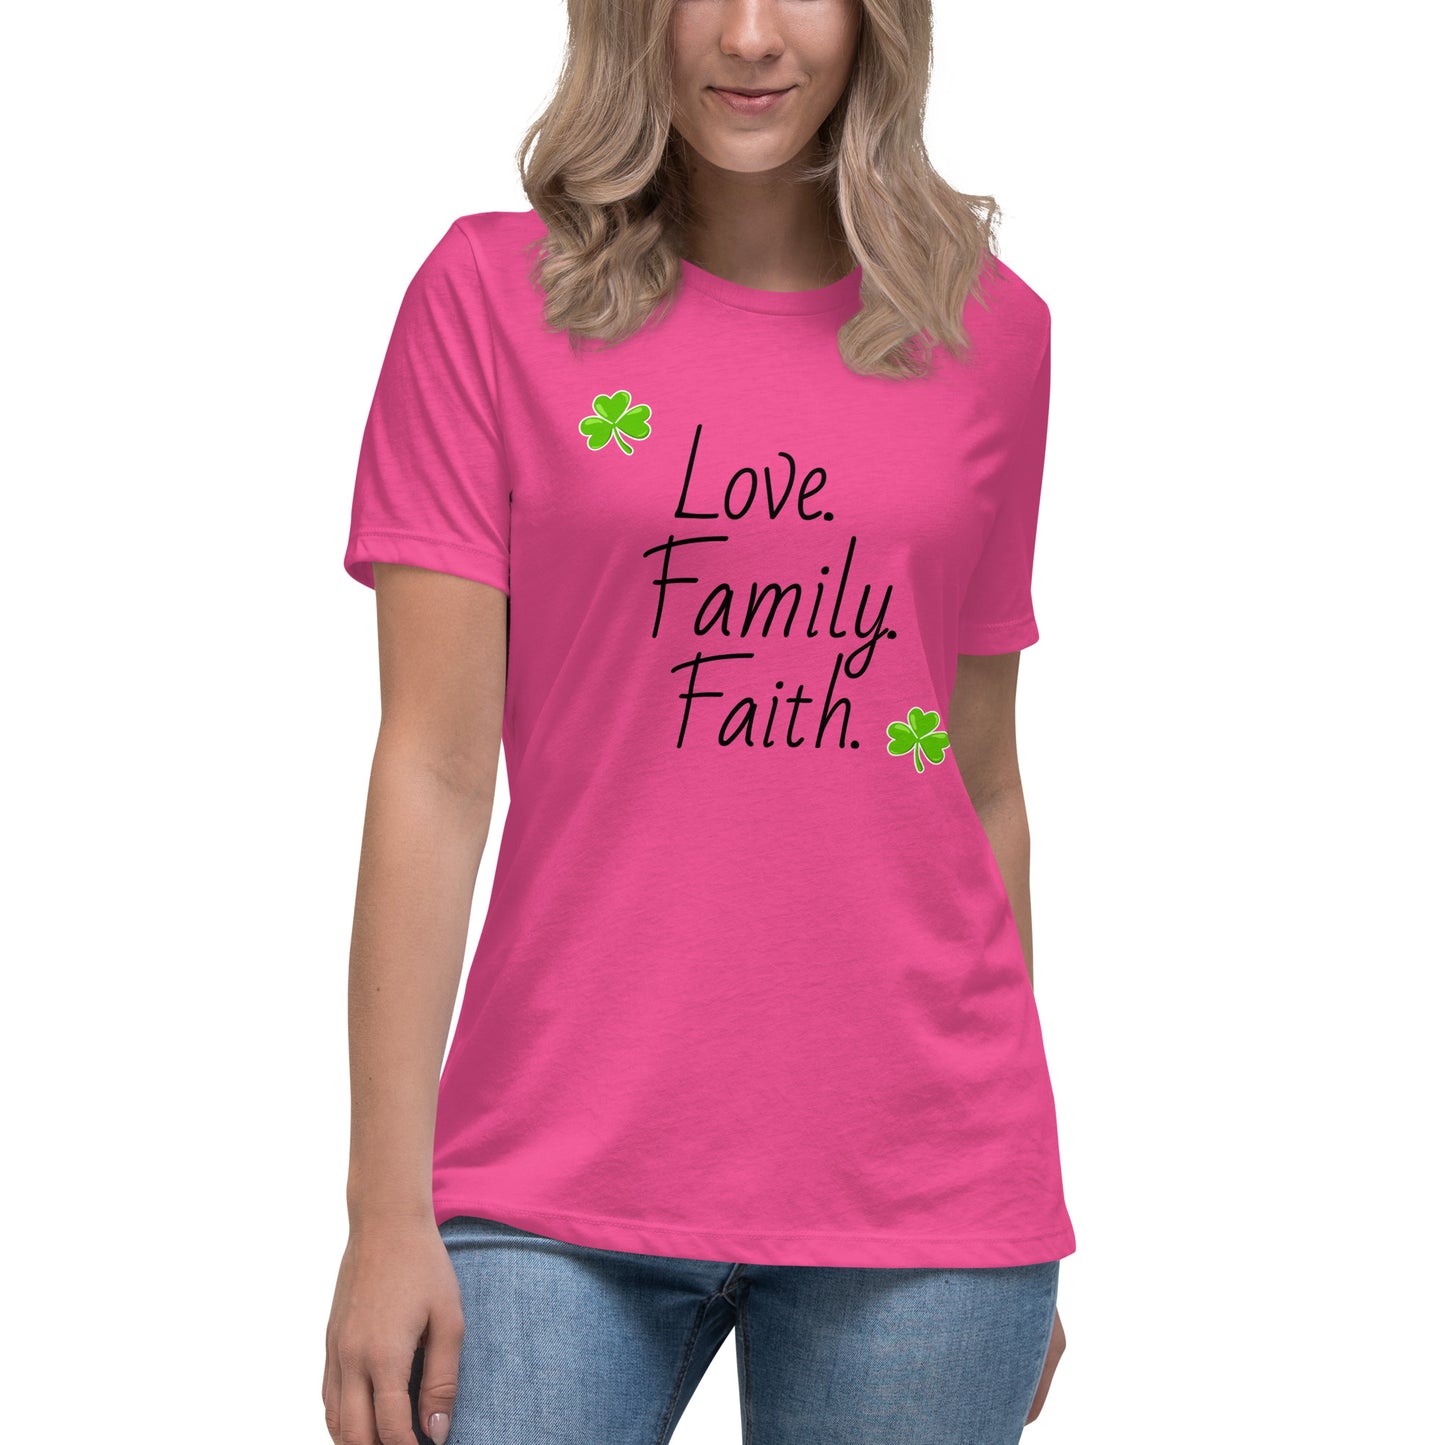 Love, Family, Faith women's tee (black lettering)